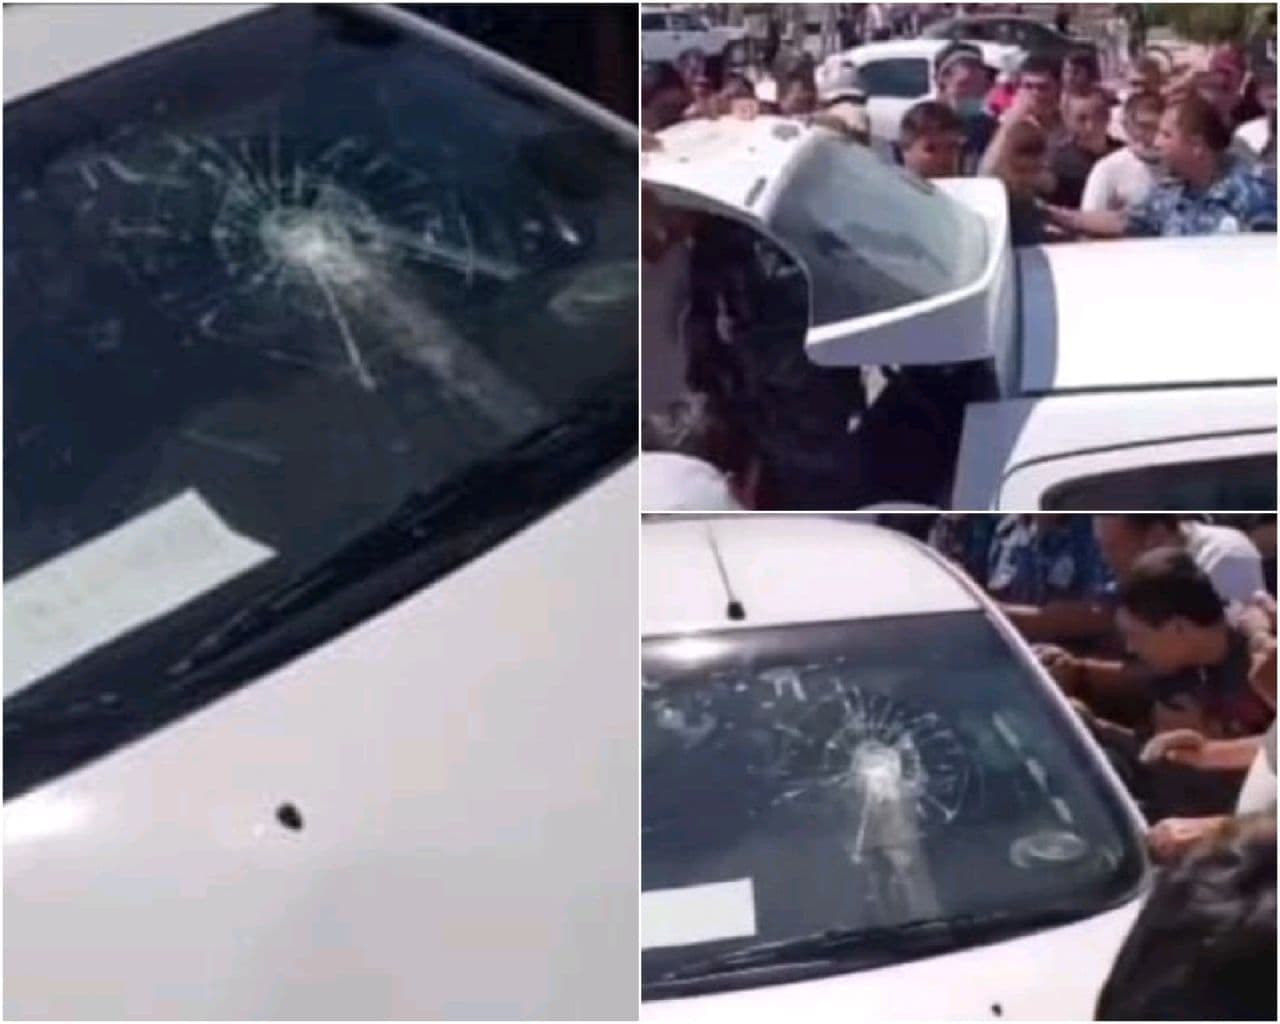 В Навоийской области водители повредили автомобиль человека, снимающего нарушения ПДД - видео